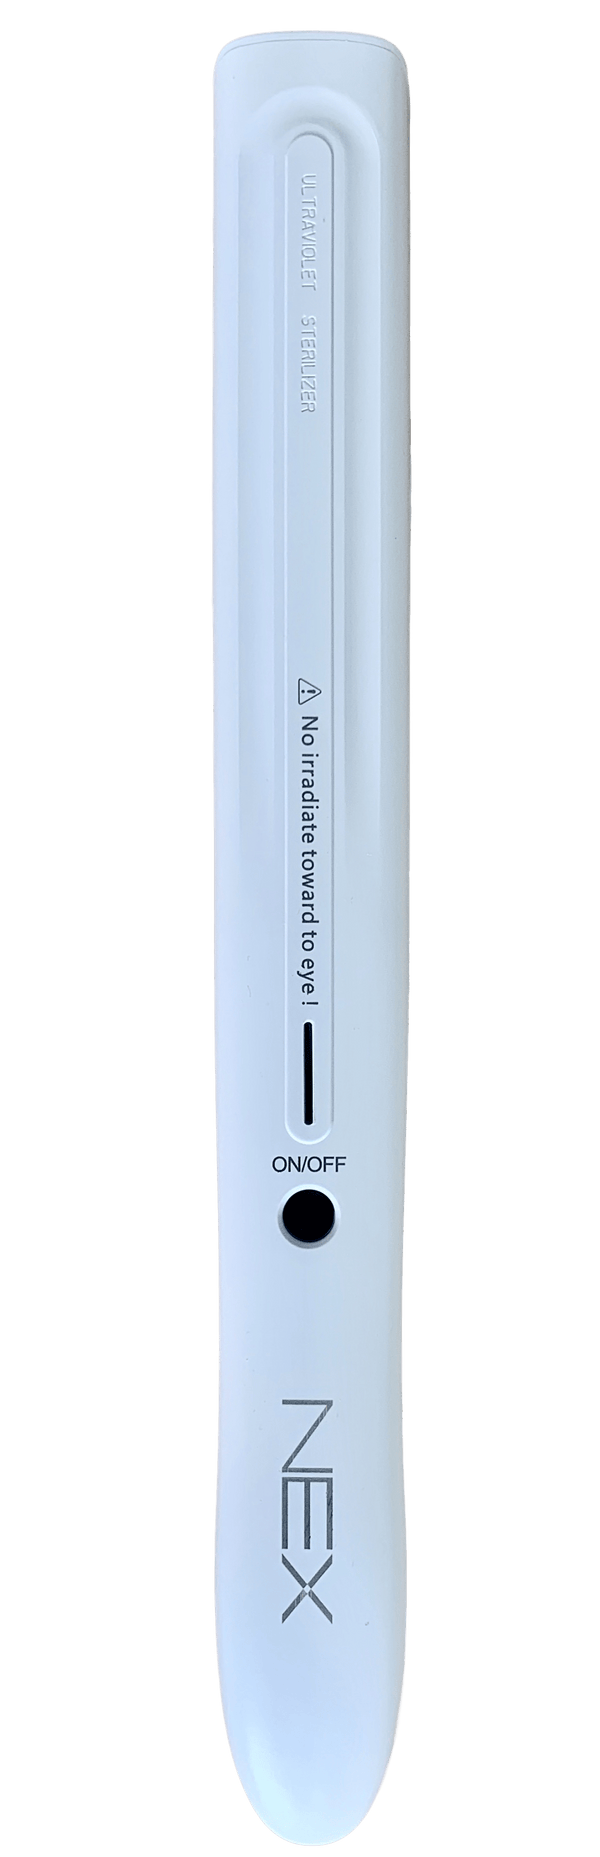 Nex Portable UV Lamp Sterilizer  - Model NxU2